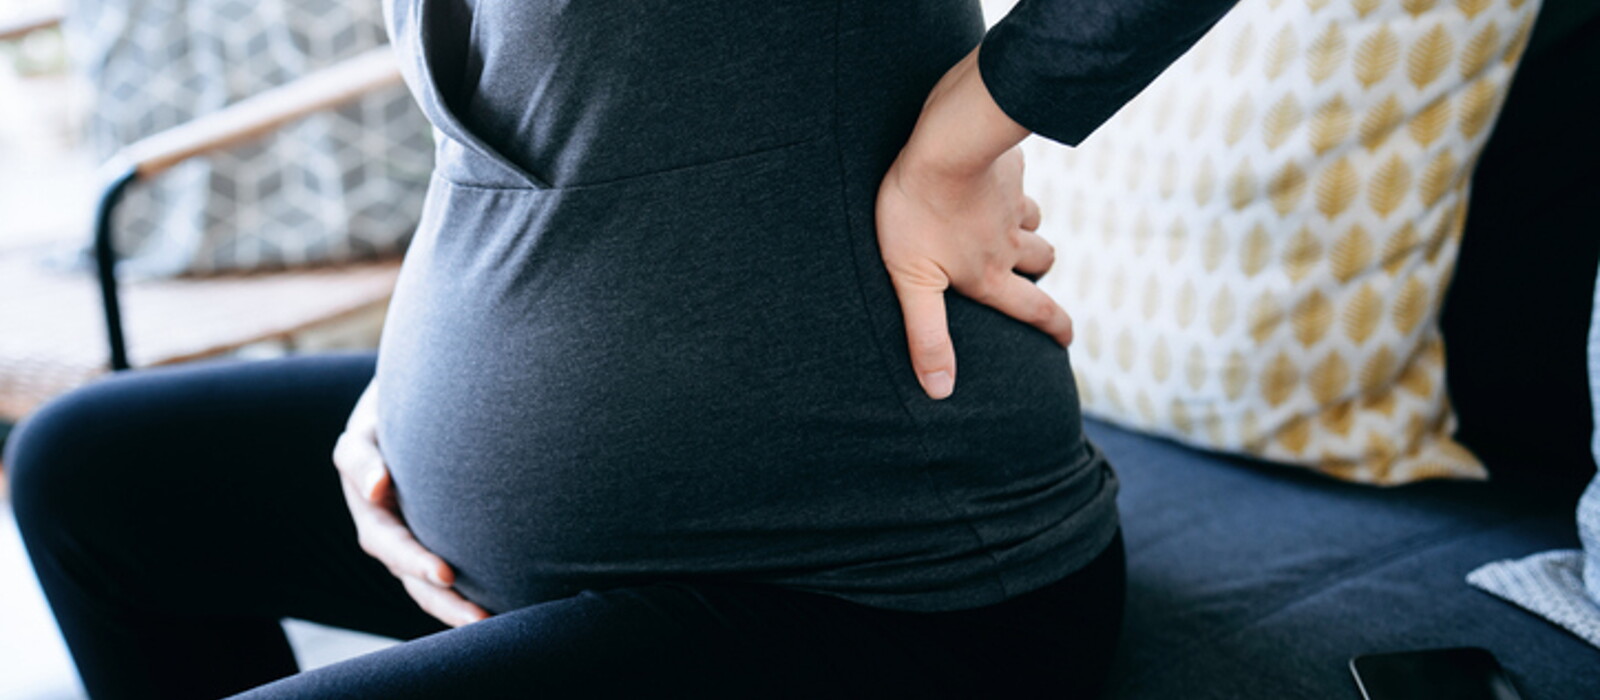 อายุครรภ์ 33 สัปดาห์ คุณแม่ท้อง 33 สัปดาห์ เกิดอะไรขึ้นบ้าง